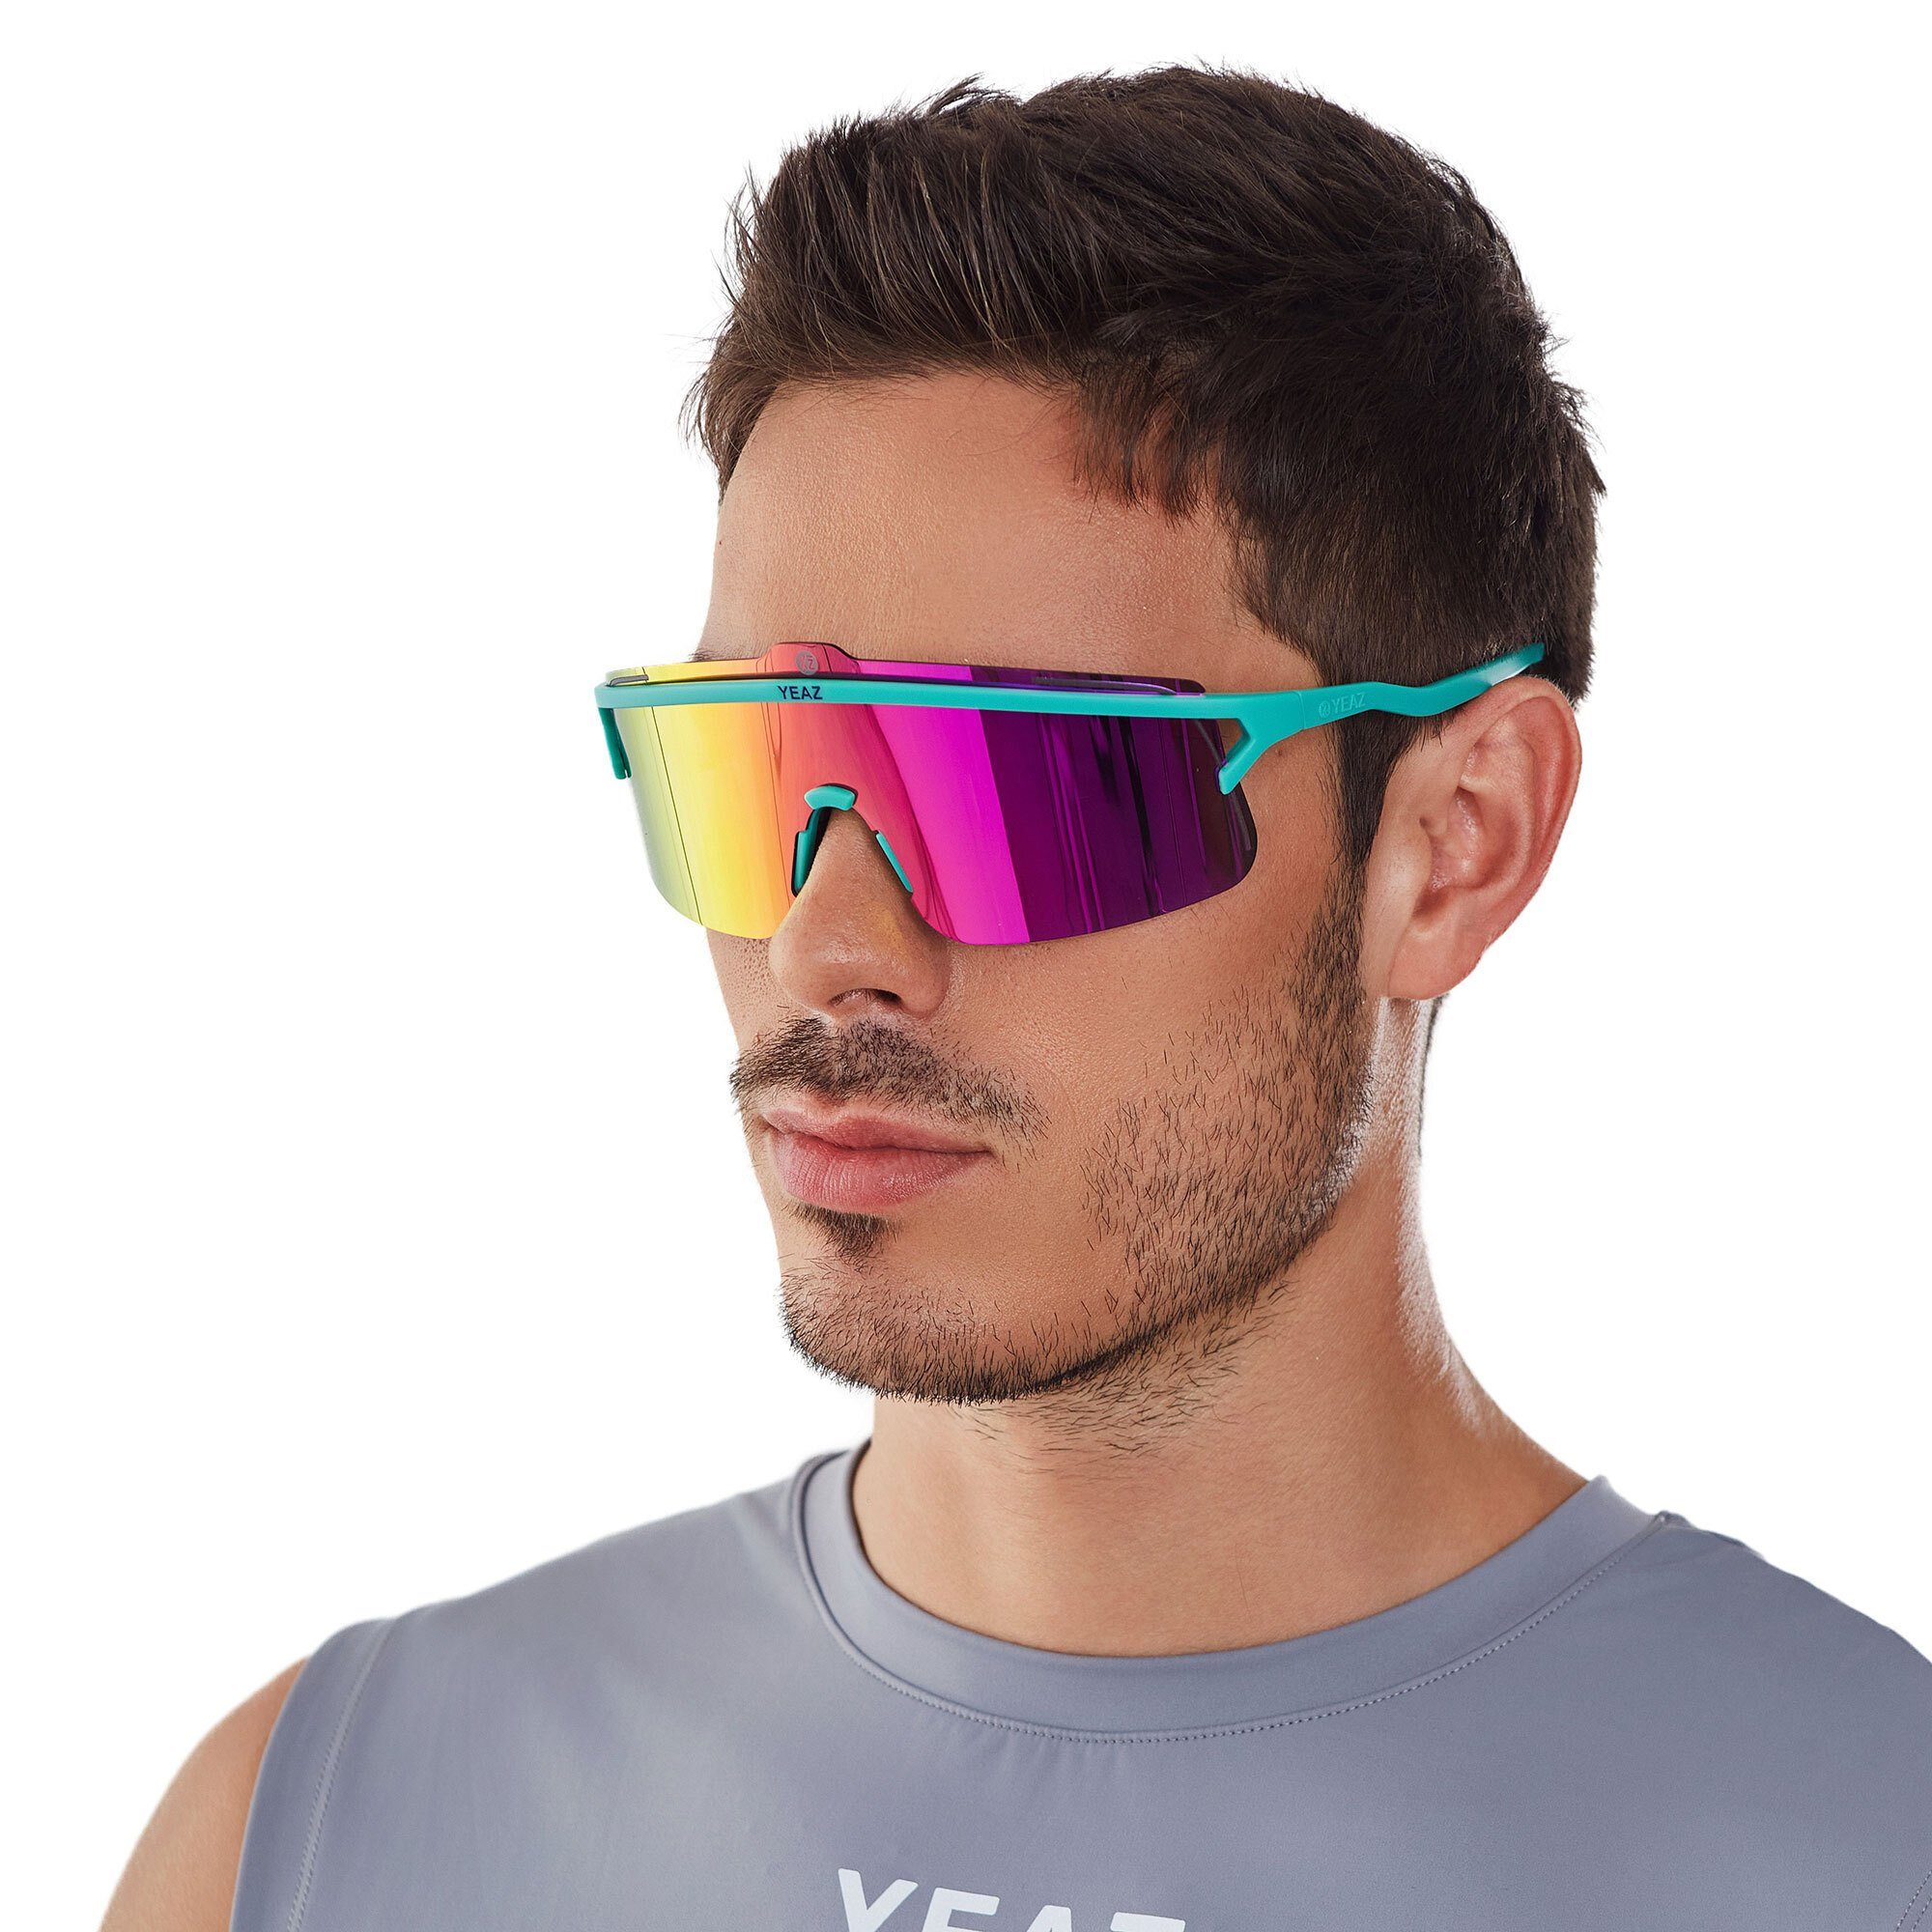 YEAZ Sportbrille SUNSHADE sport-sonnenbrille black/silver, Erlebe perfekte Sicht, Komfort und Style grün / lila